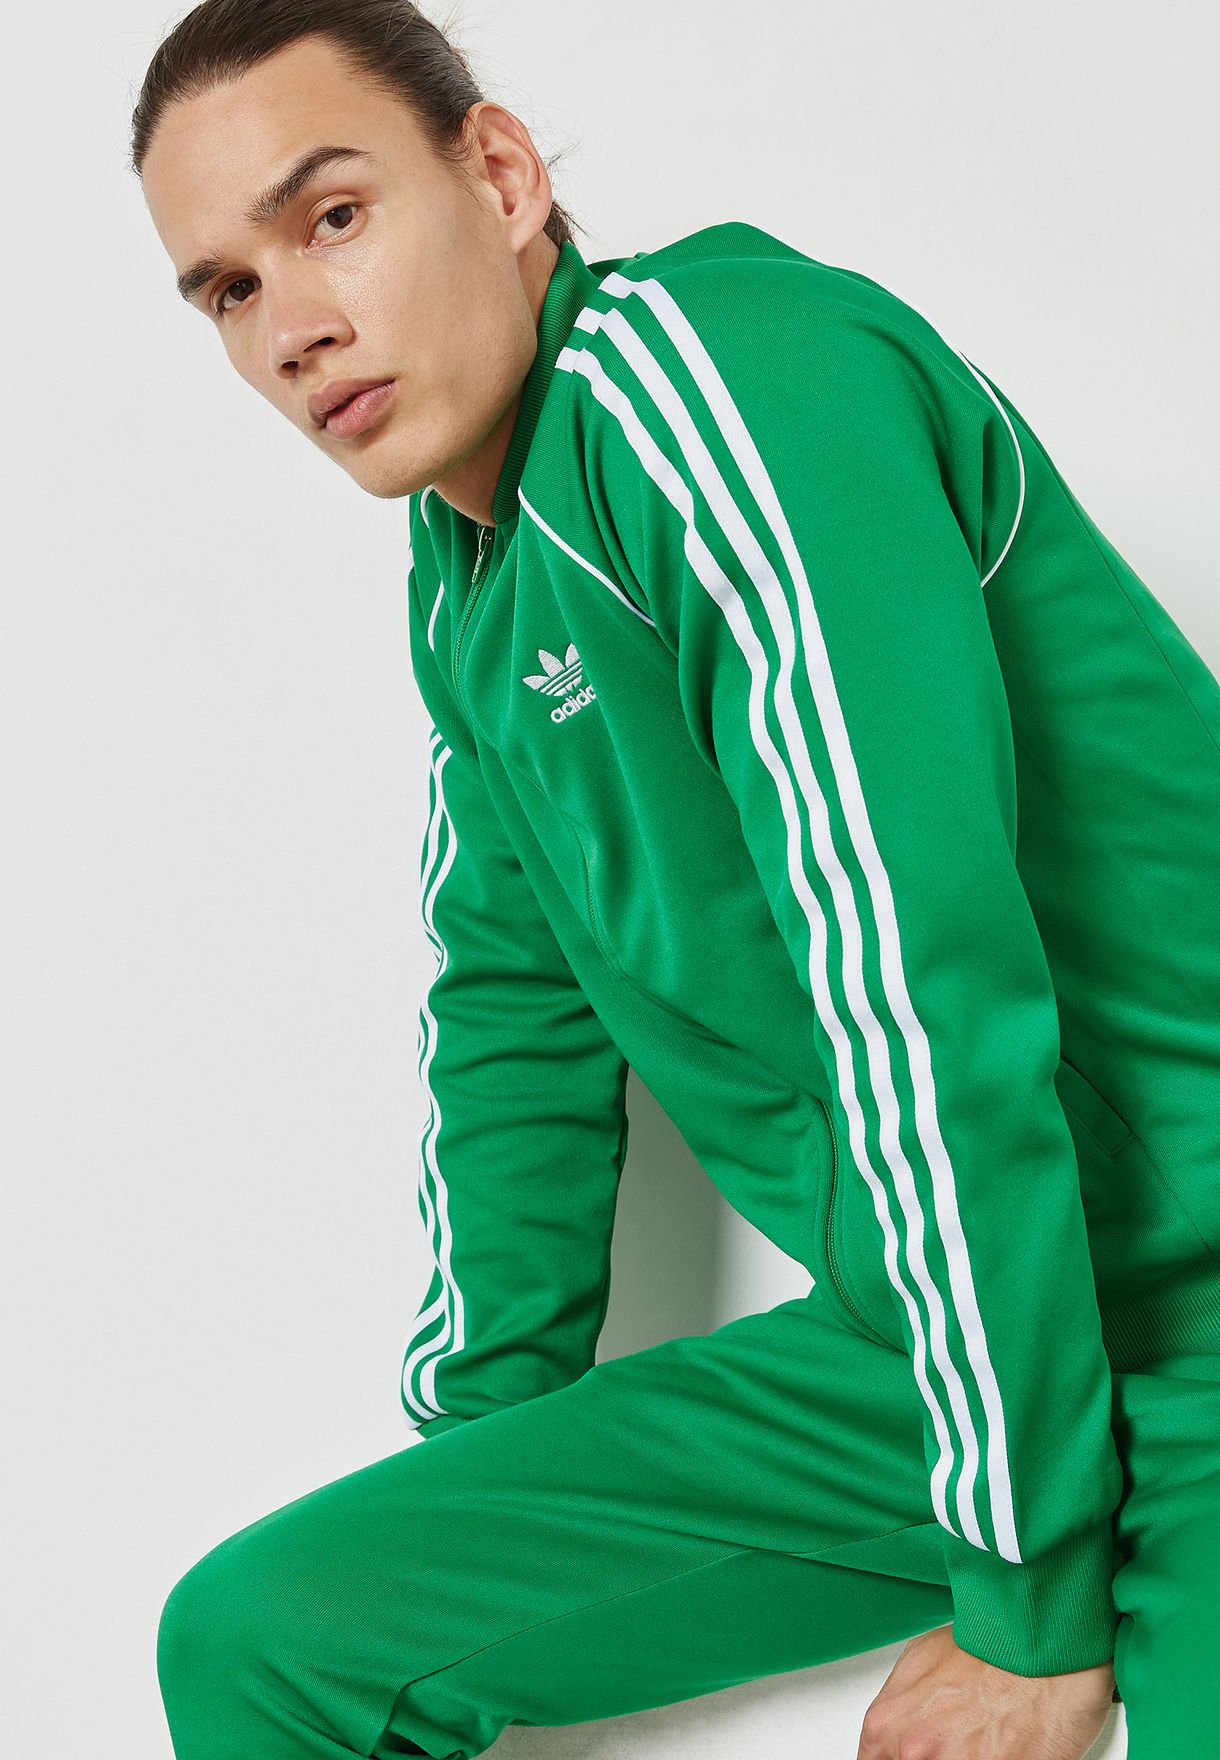 Adidas Superstar Jacket Green SAVE 44% - aveclumiere.com